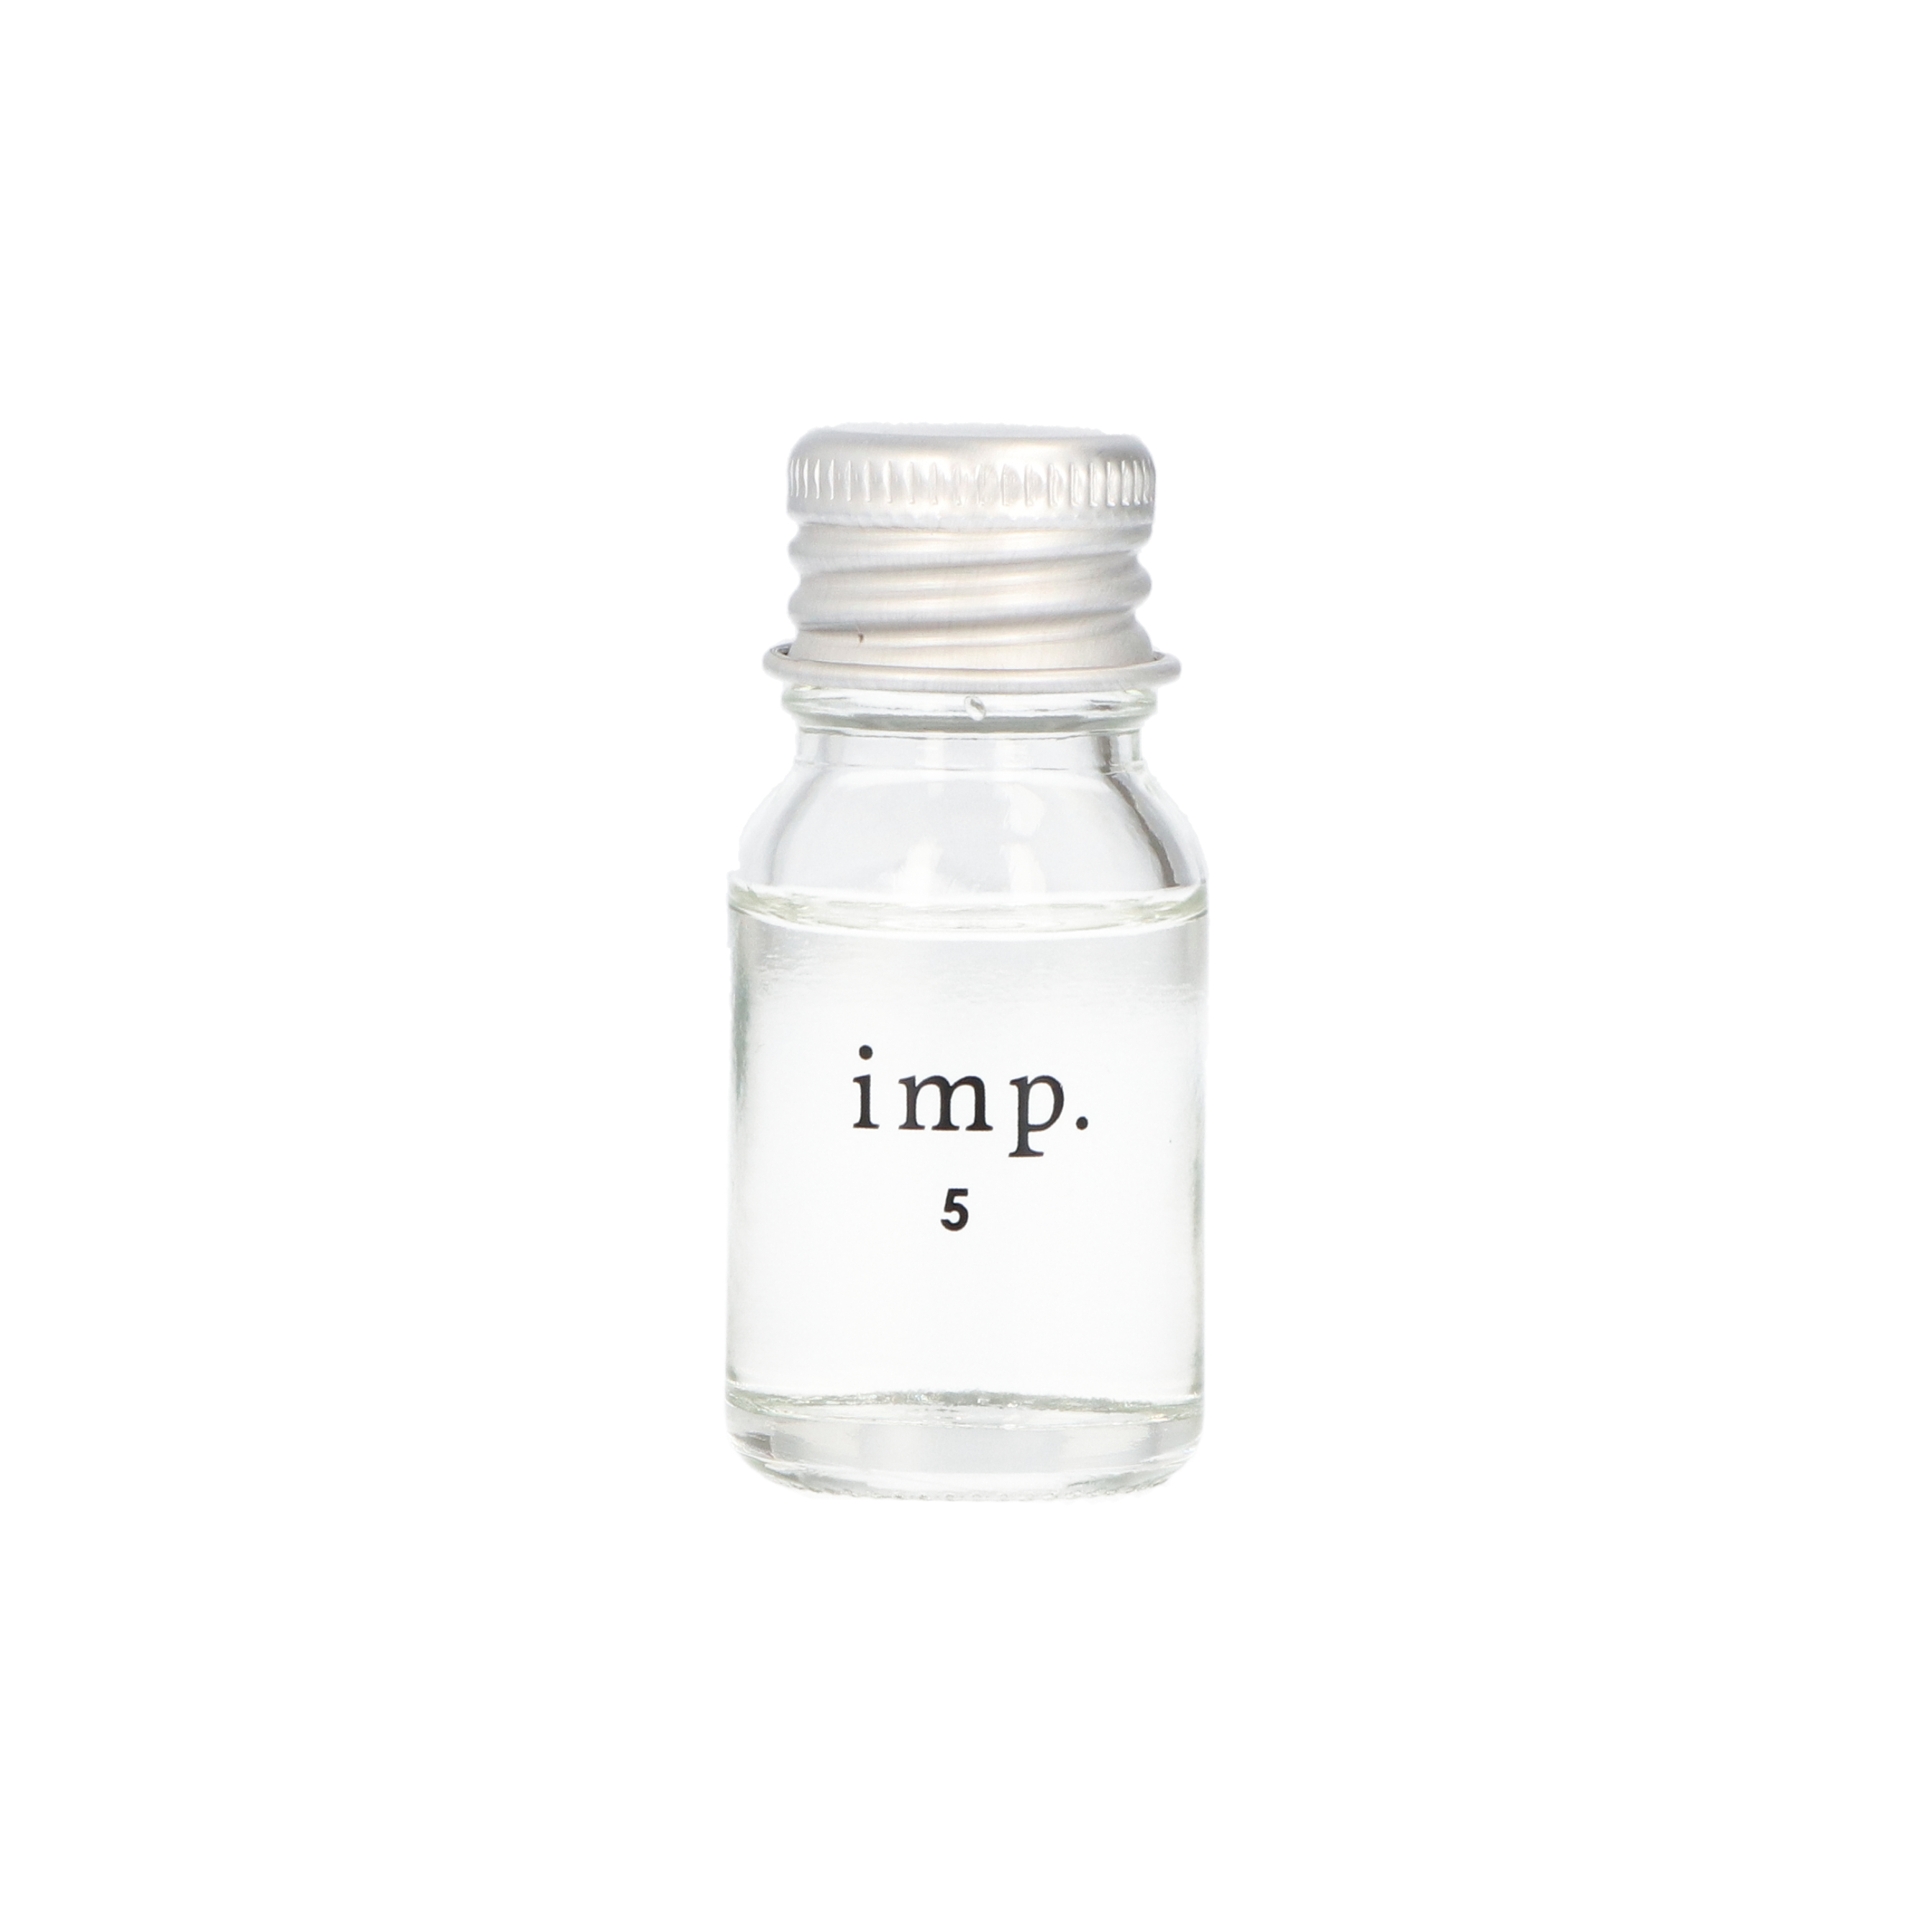 日本最級 1位香水 インプ imp オードトワレ メンズ レディース ユニセックス 人気のナチュラルな香り 誰からも愛される人気の香水 imp. godhammer.com